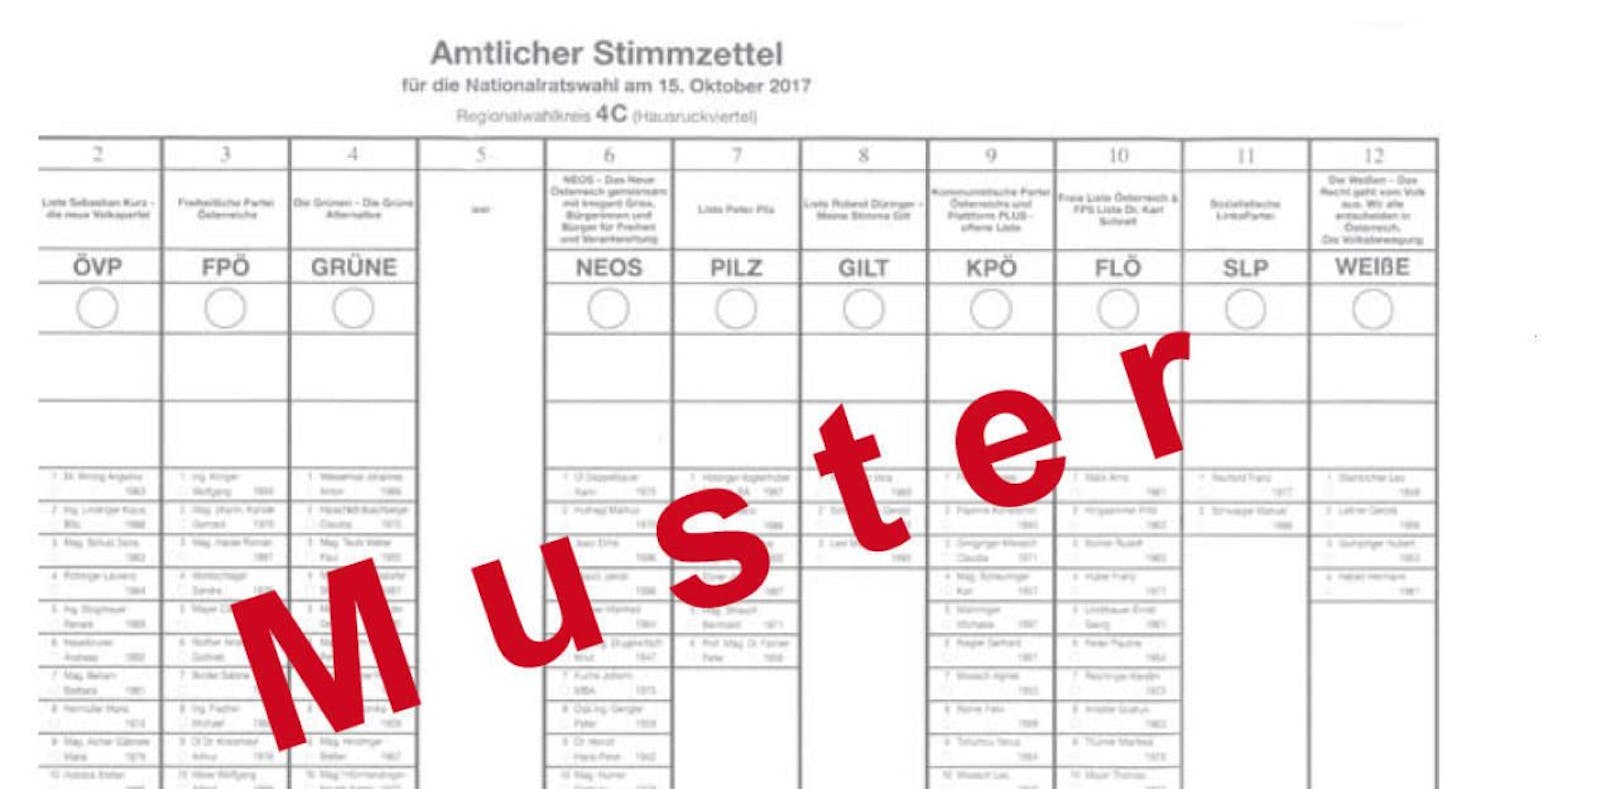 Mondsee "vergisst" die SPÖ auf dem Wahlzettel